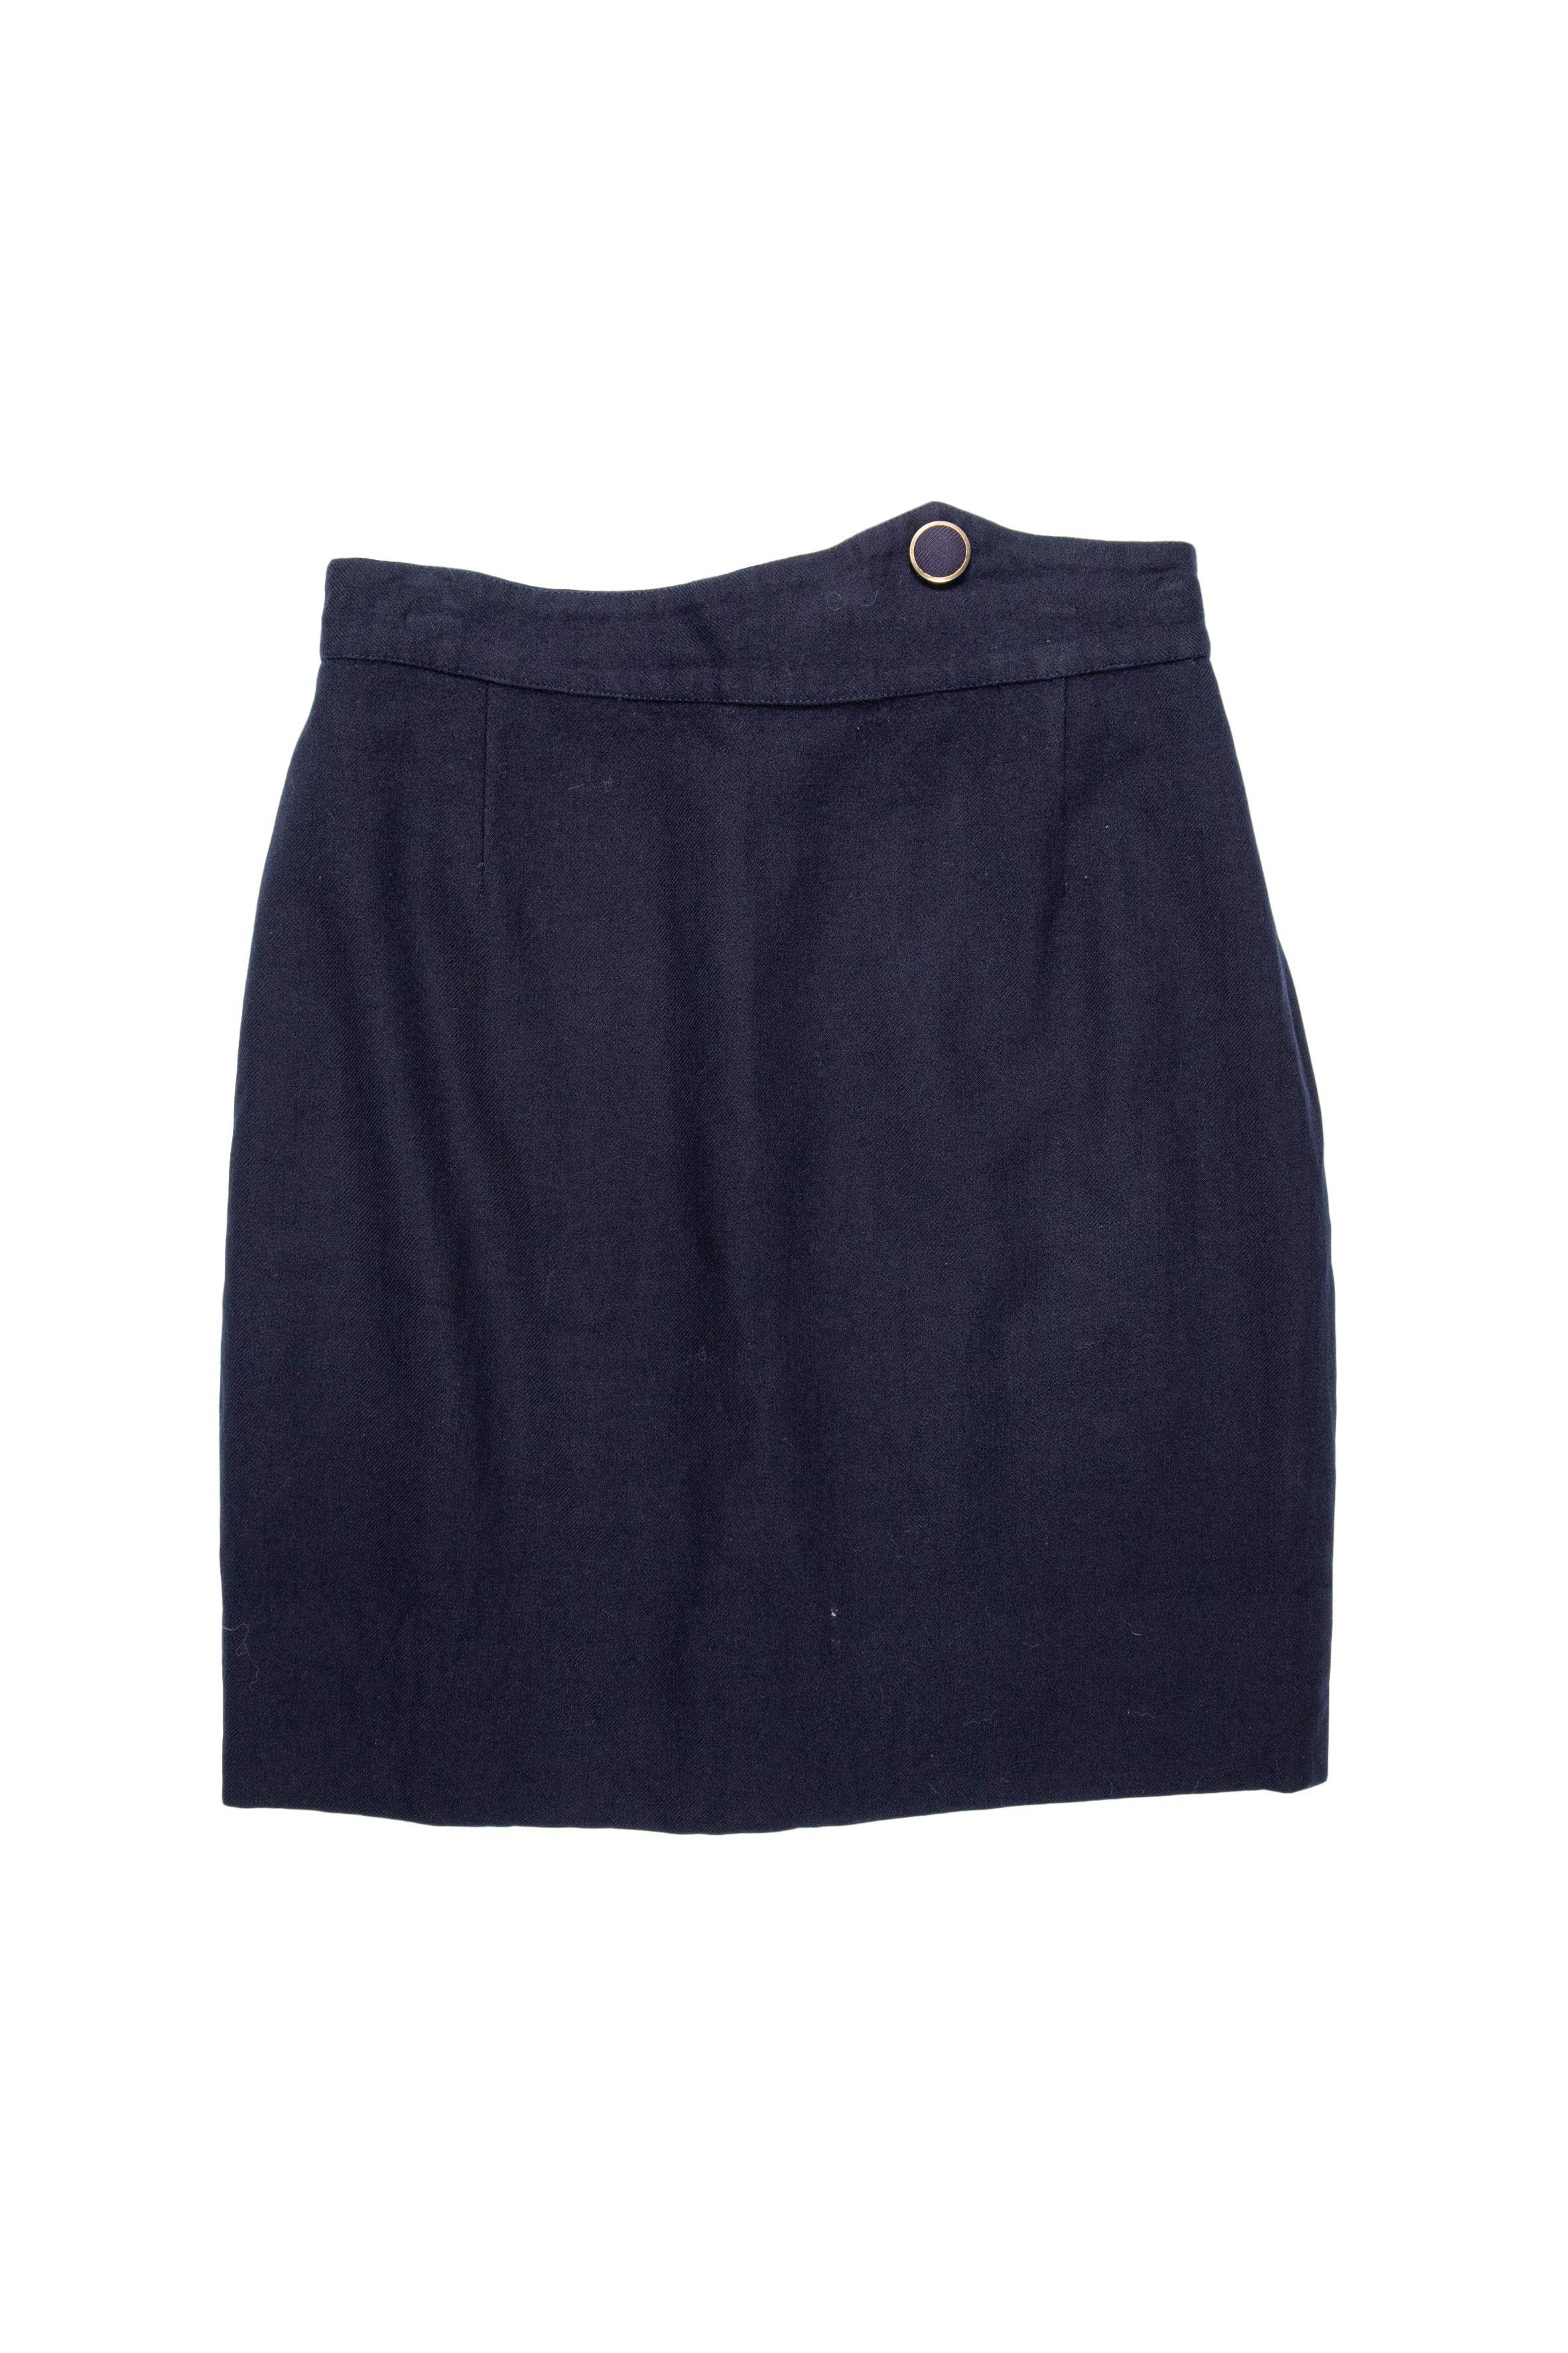 Falda de paño azul con botón forrado en la pretina, forrada y con cierre posterior. Cintura 70 cm, largo 50 cm